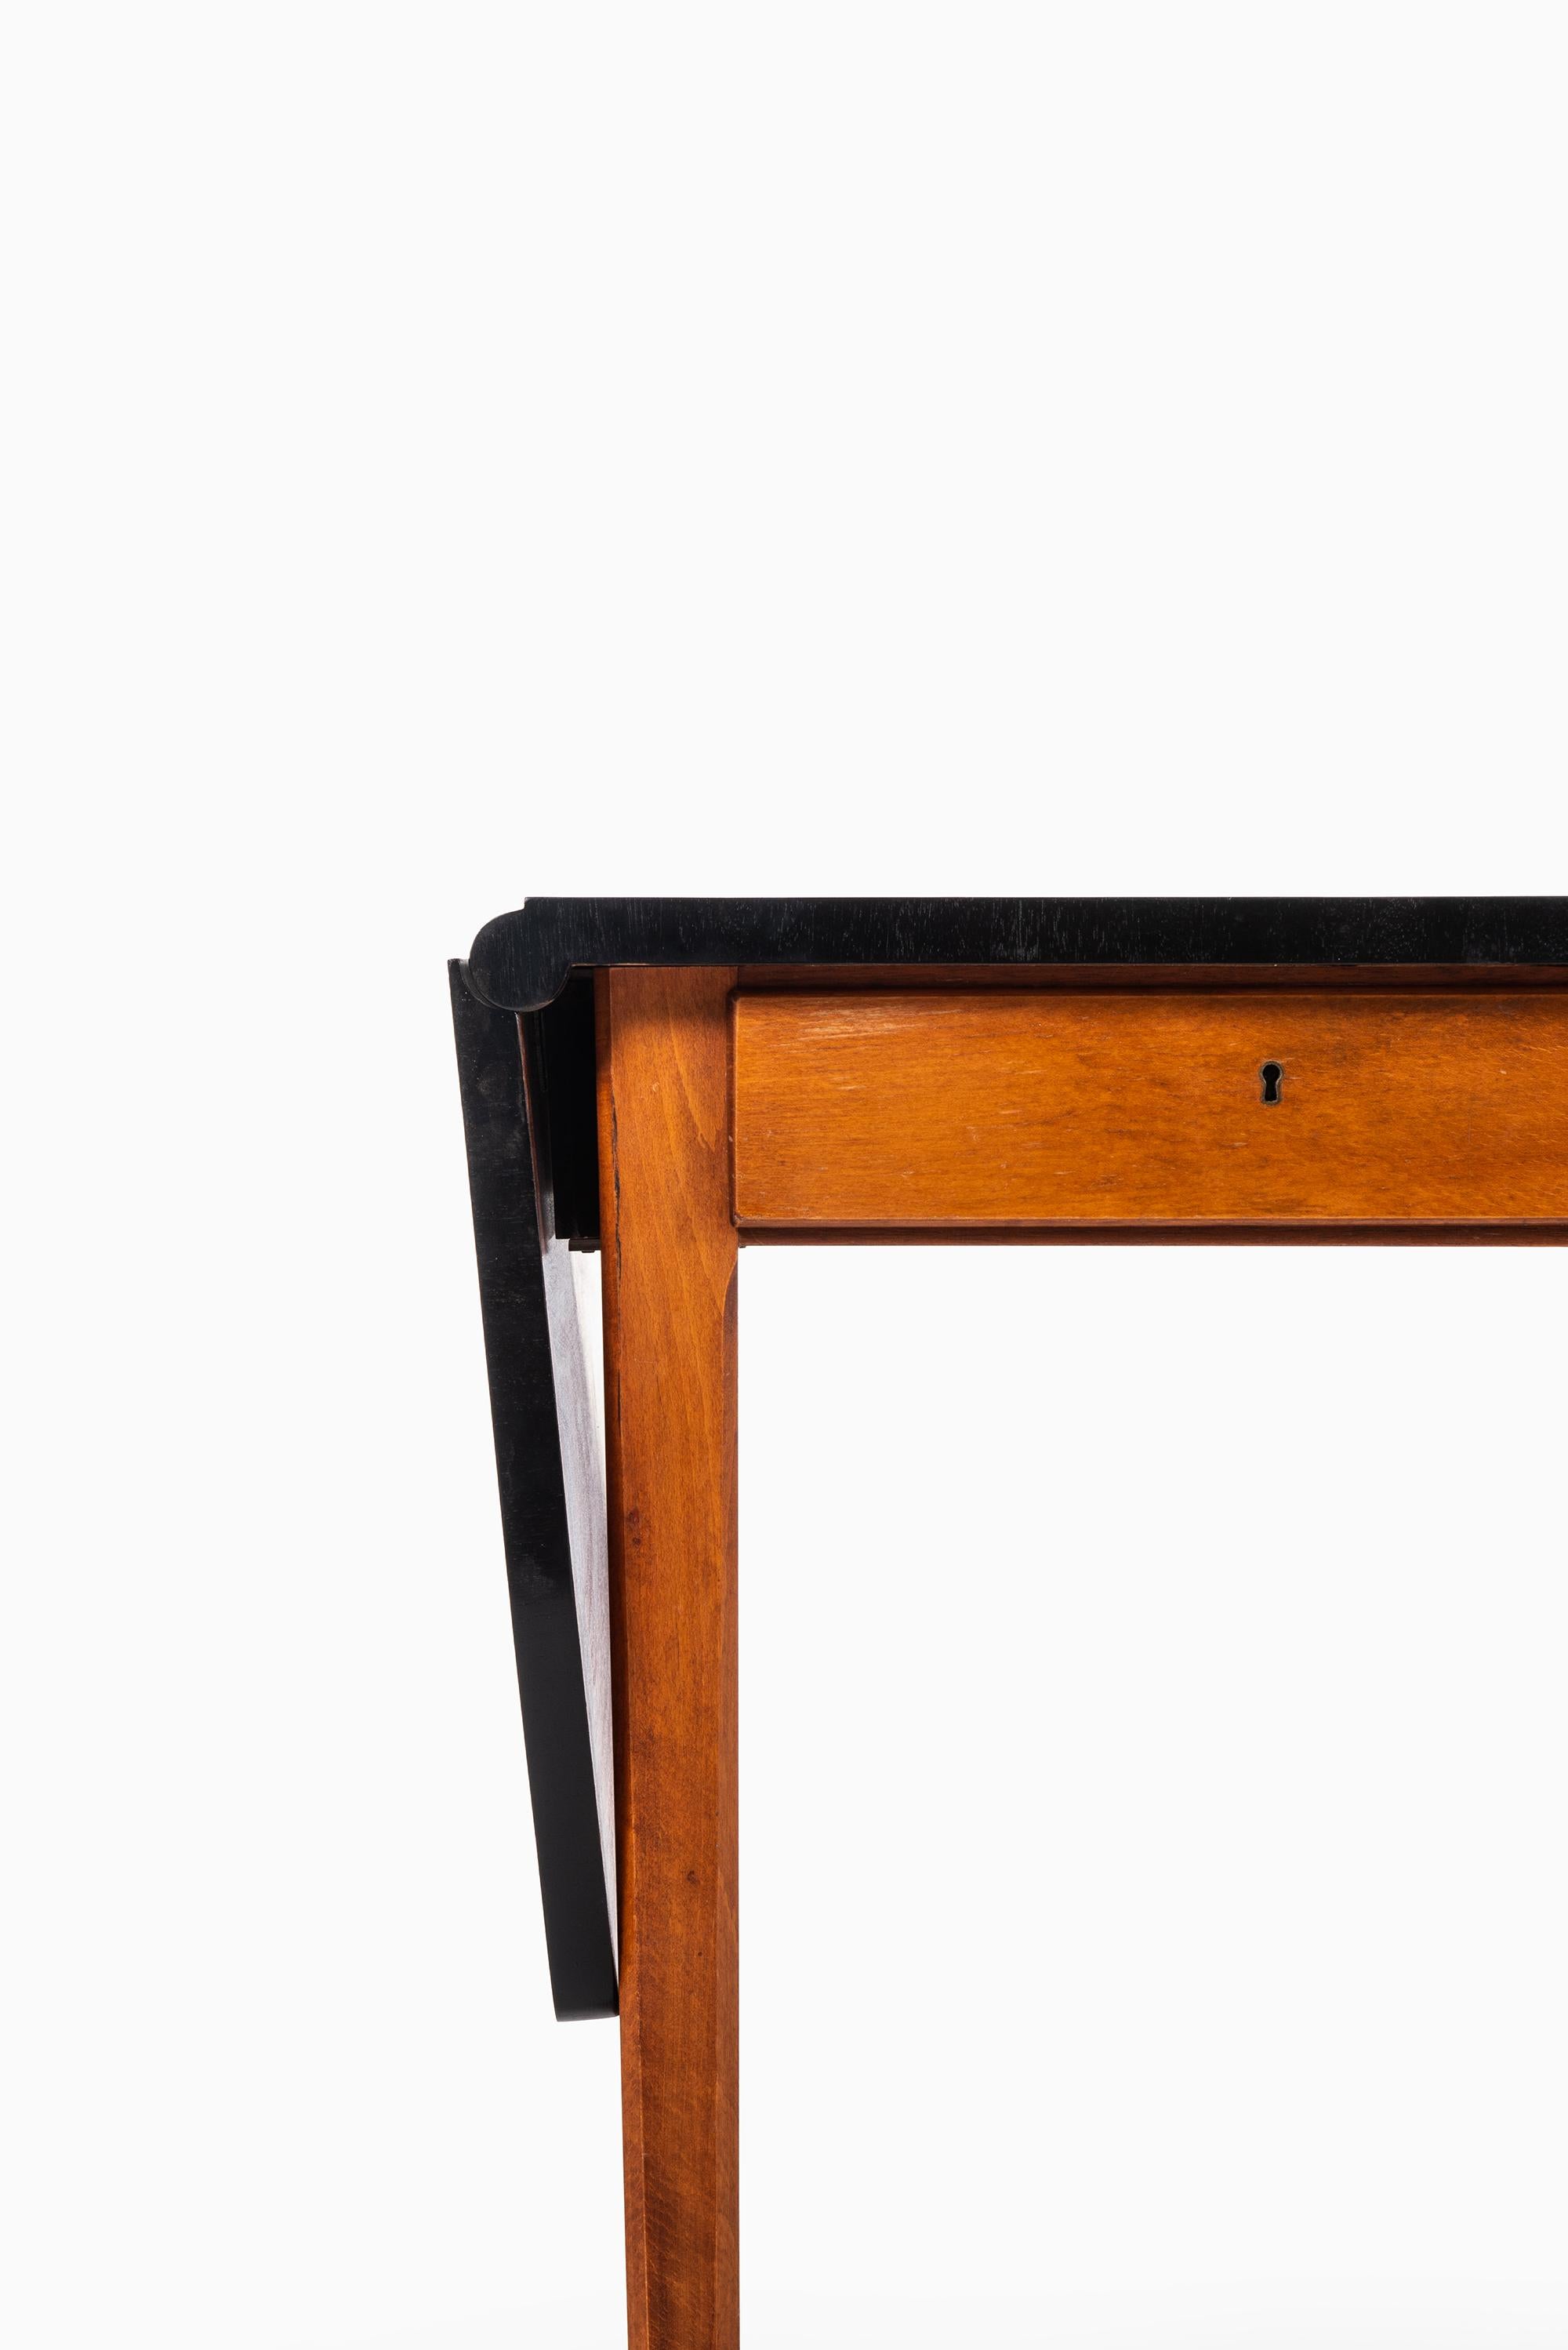 Rare drop-leaf desk designed by Bertil Fridhagen. Produced by Bodafors in Sweden.